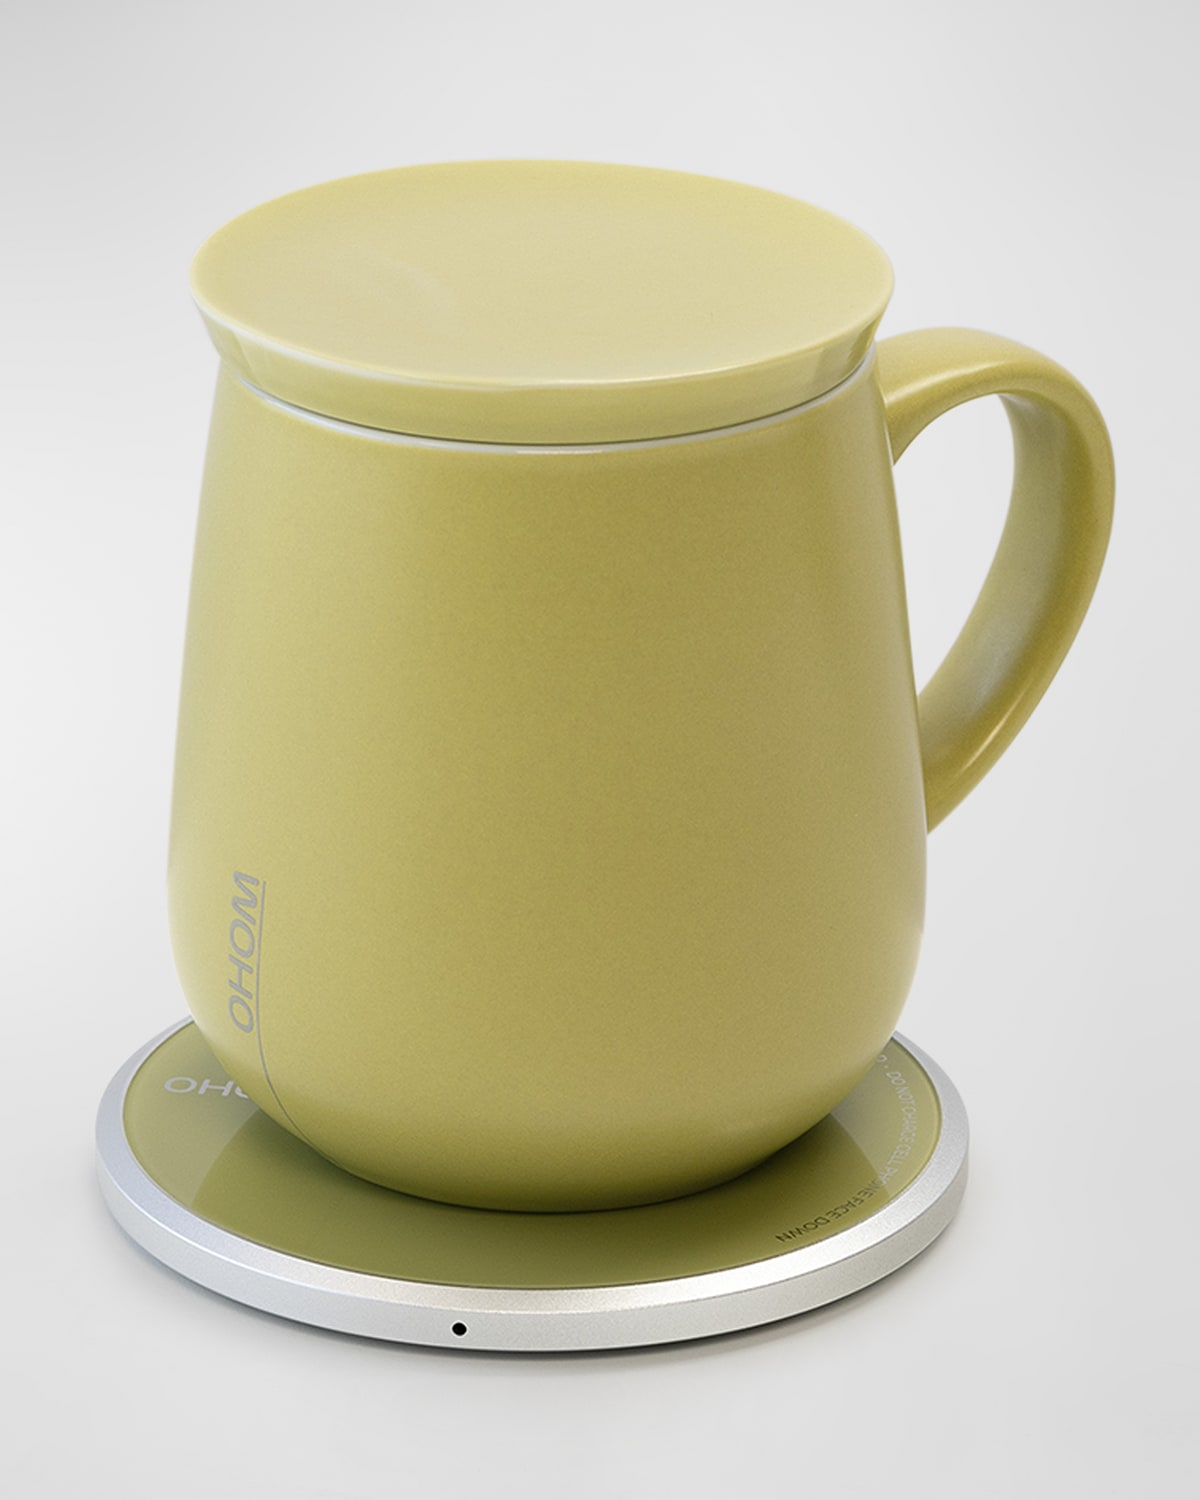 Ohom Ui Self-heating Mug, 12 Oz. In Classic Olive